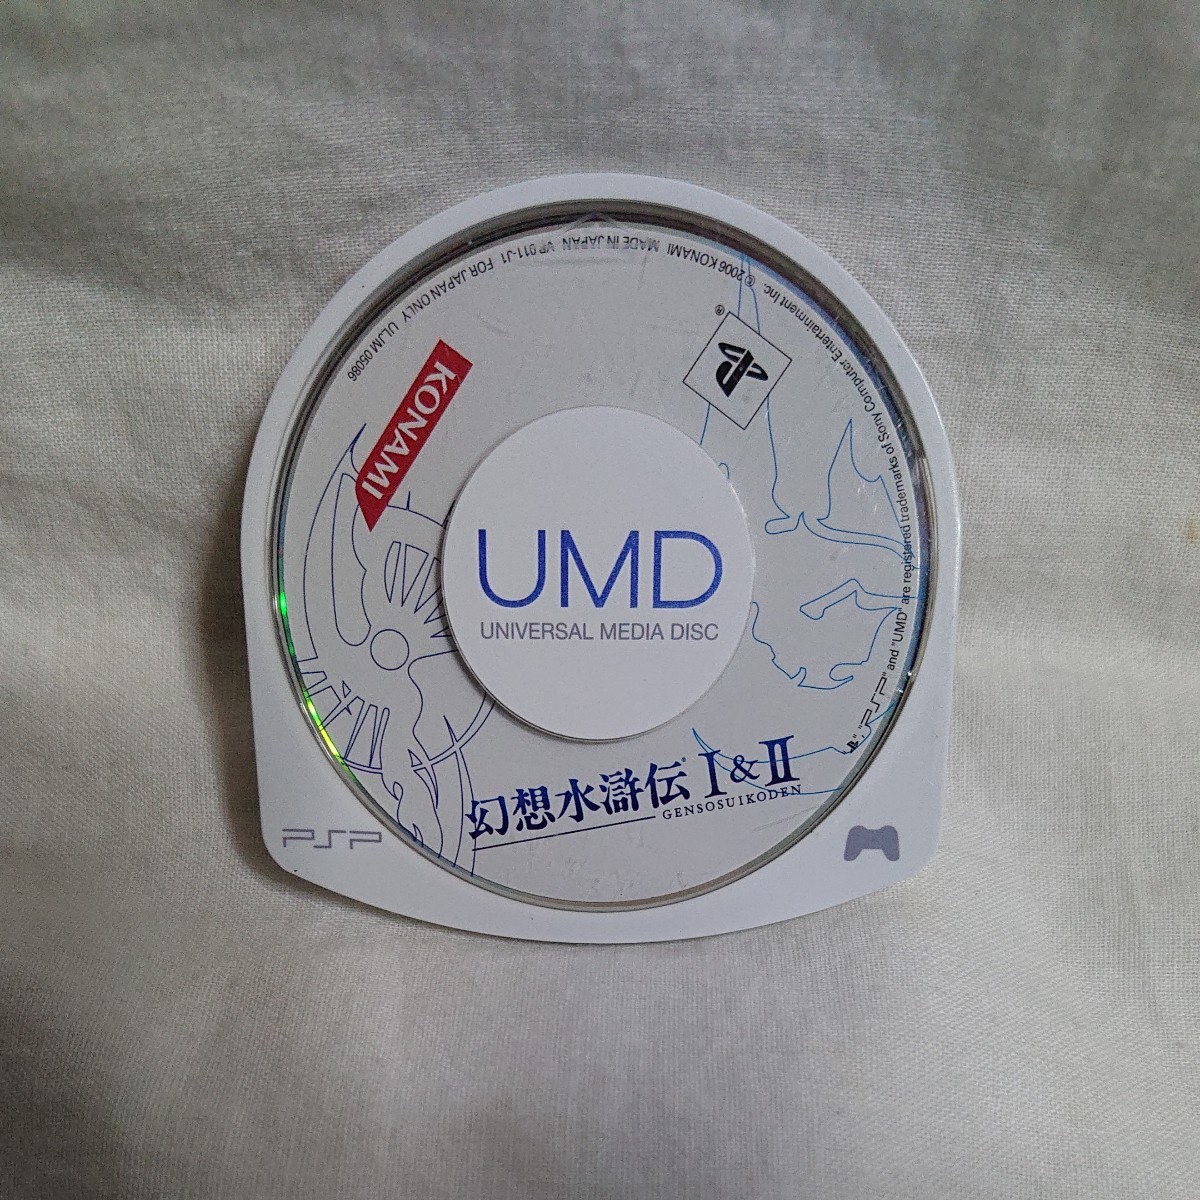 PSP 幻想水滸伝Ⅰ&Ⅱ ソフトのみ 動作確認済み PSP